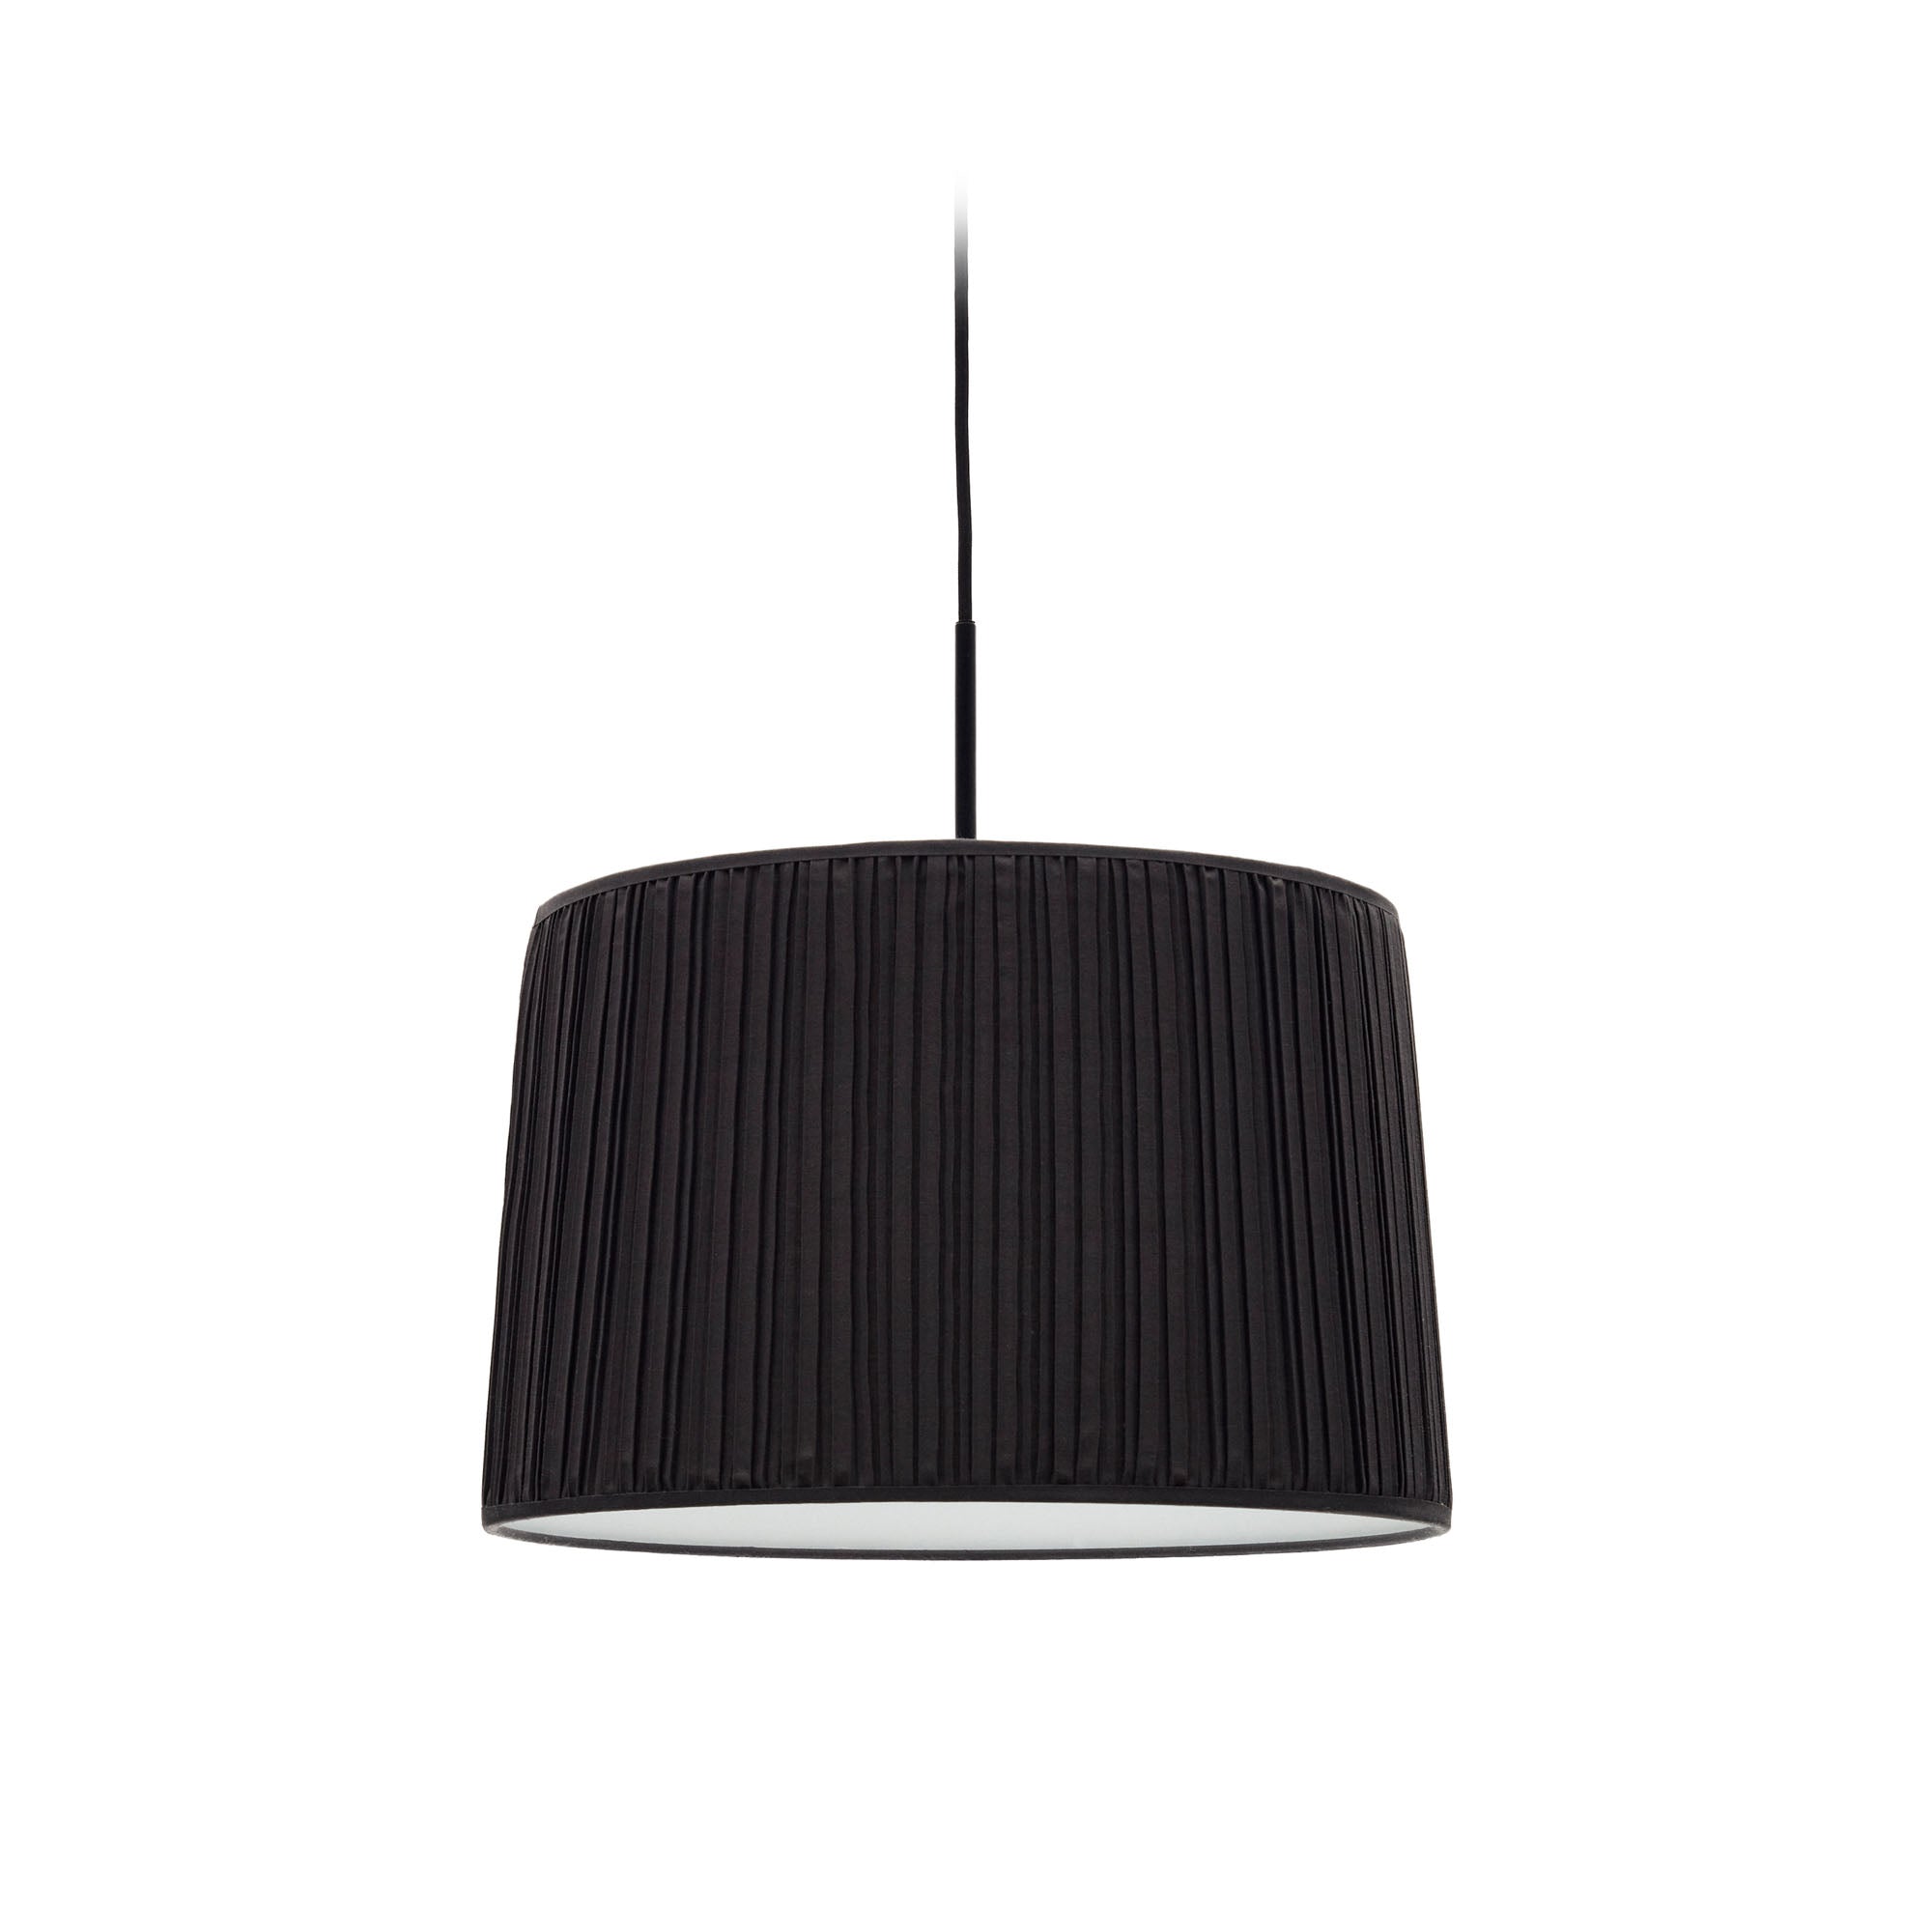 Guash mennyezeti lámpaernyő fekete színben, Ø 40 cm